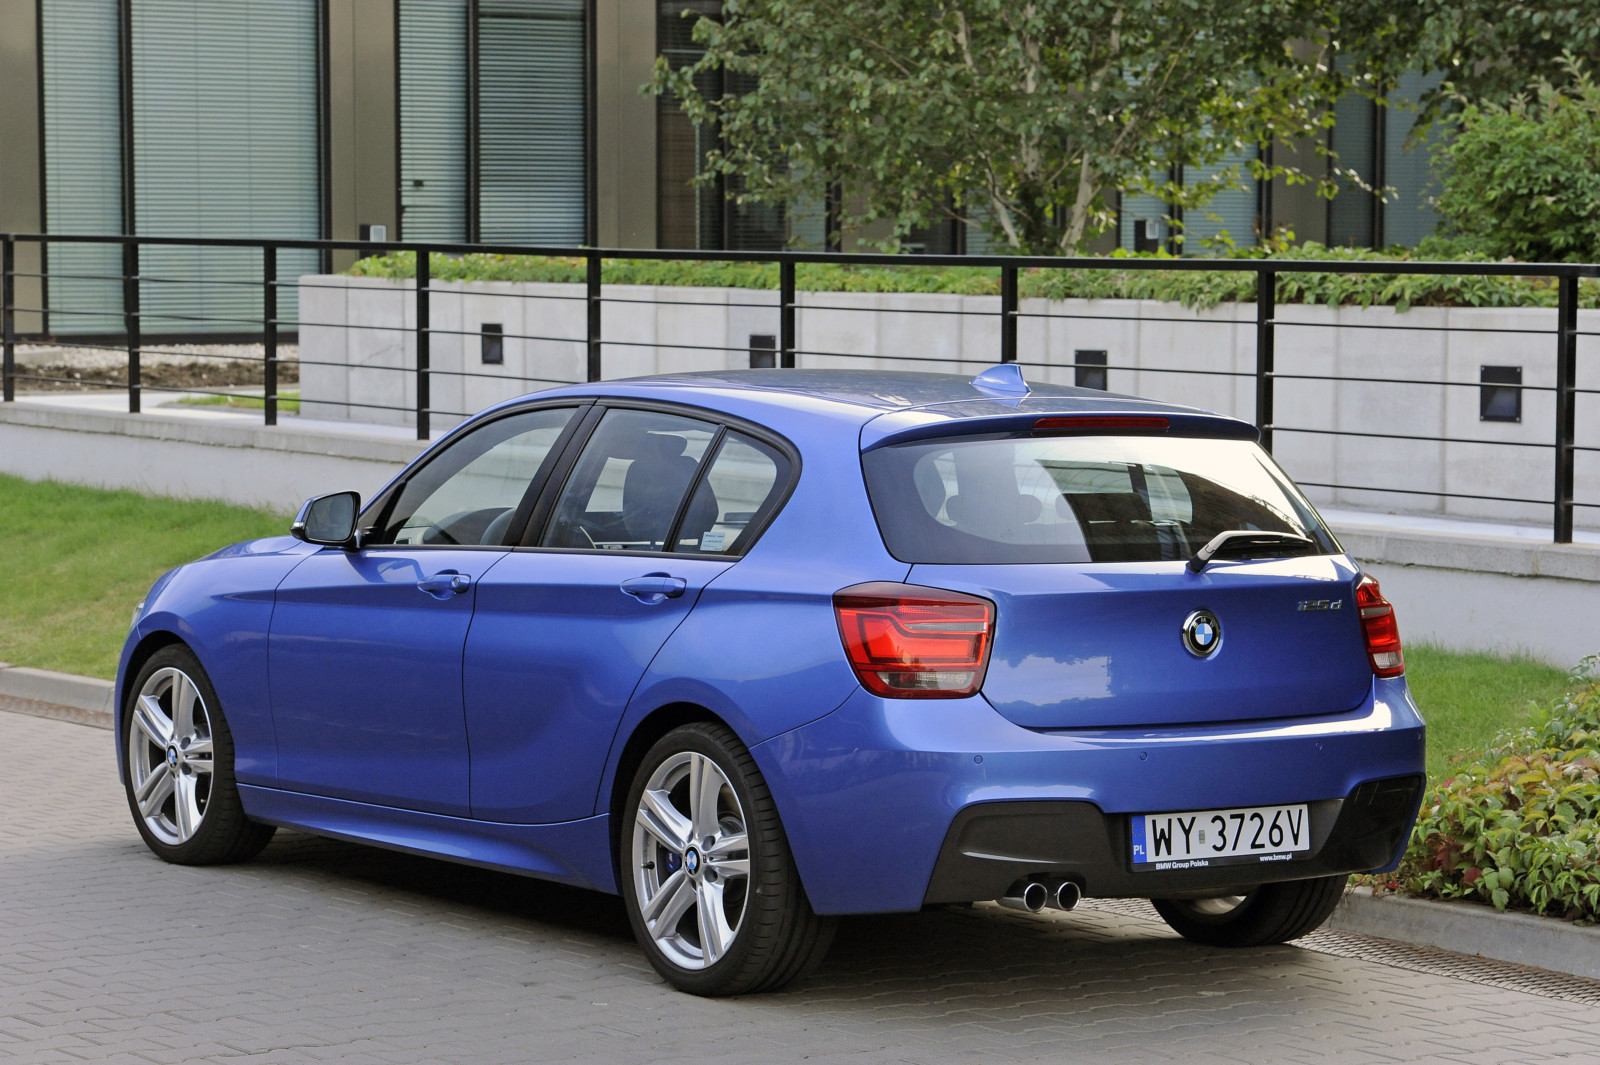 BMW serii 1 drugiej generacji (F20) czy warto kupować